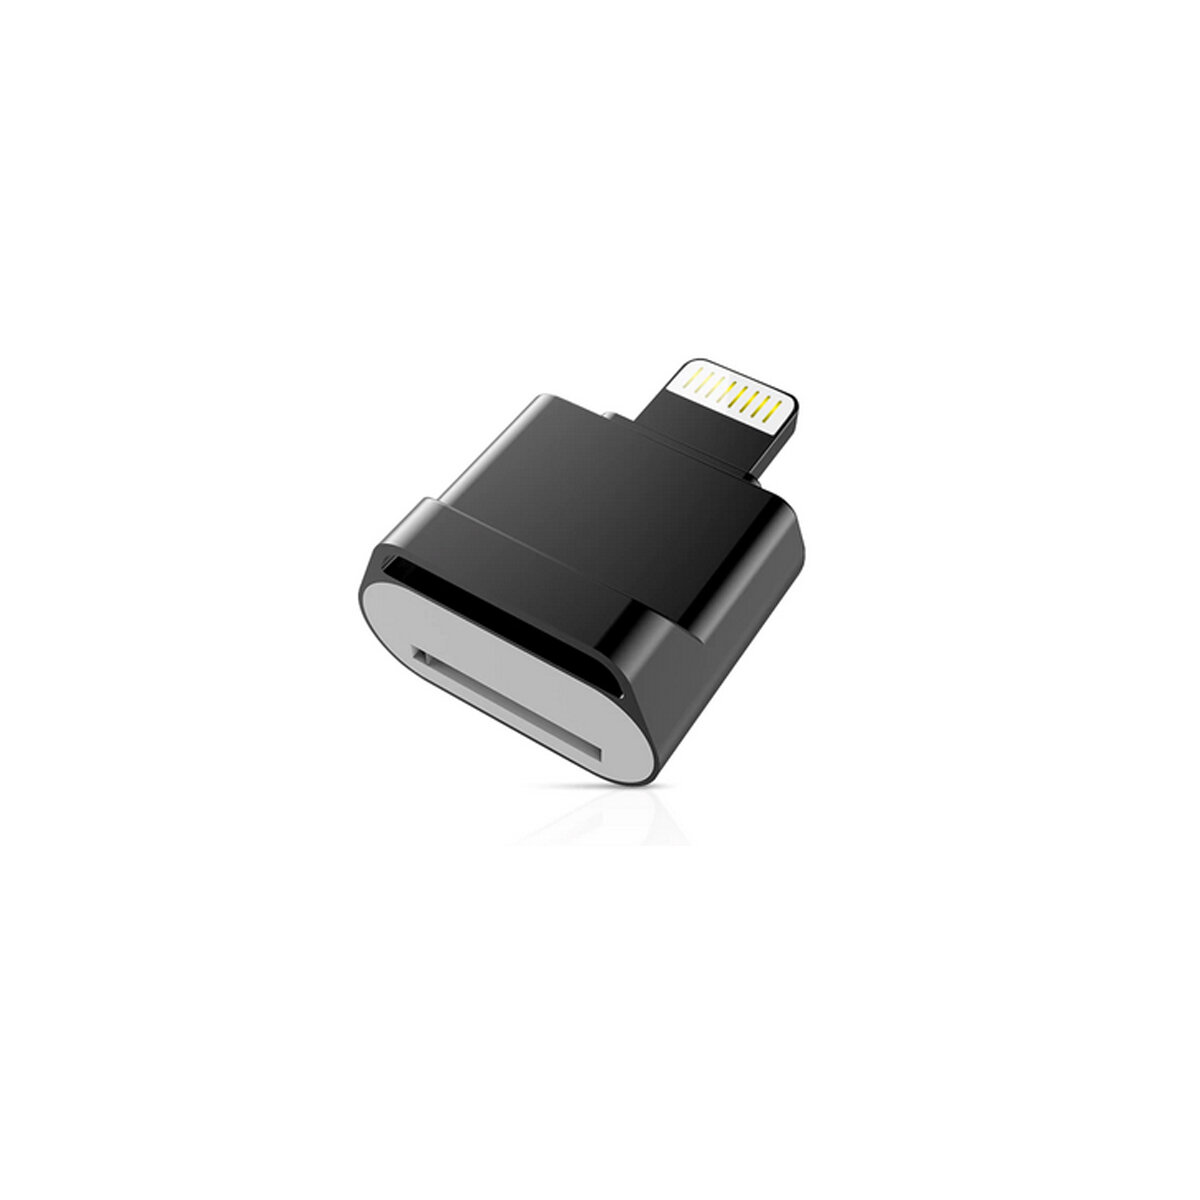 Картридер с micro sd разъемом, для смартфонов и планшетов Apple, металлический мини-кардридер 3.0